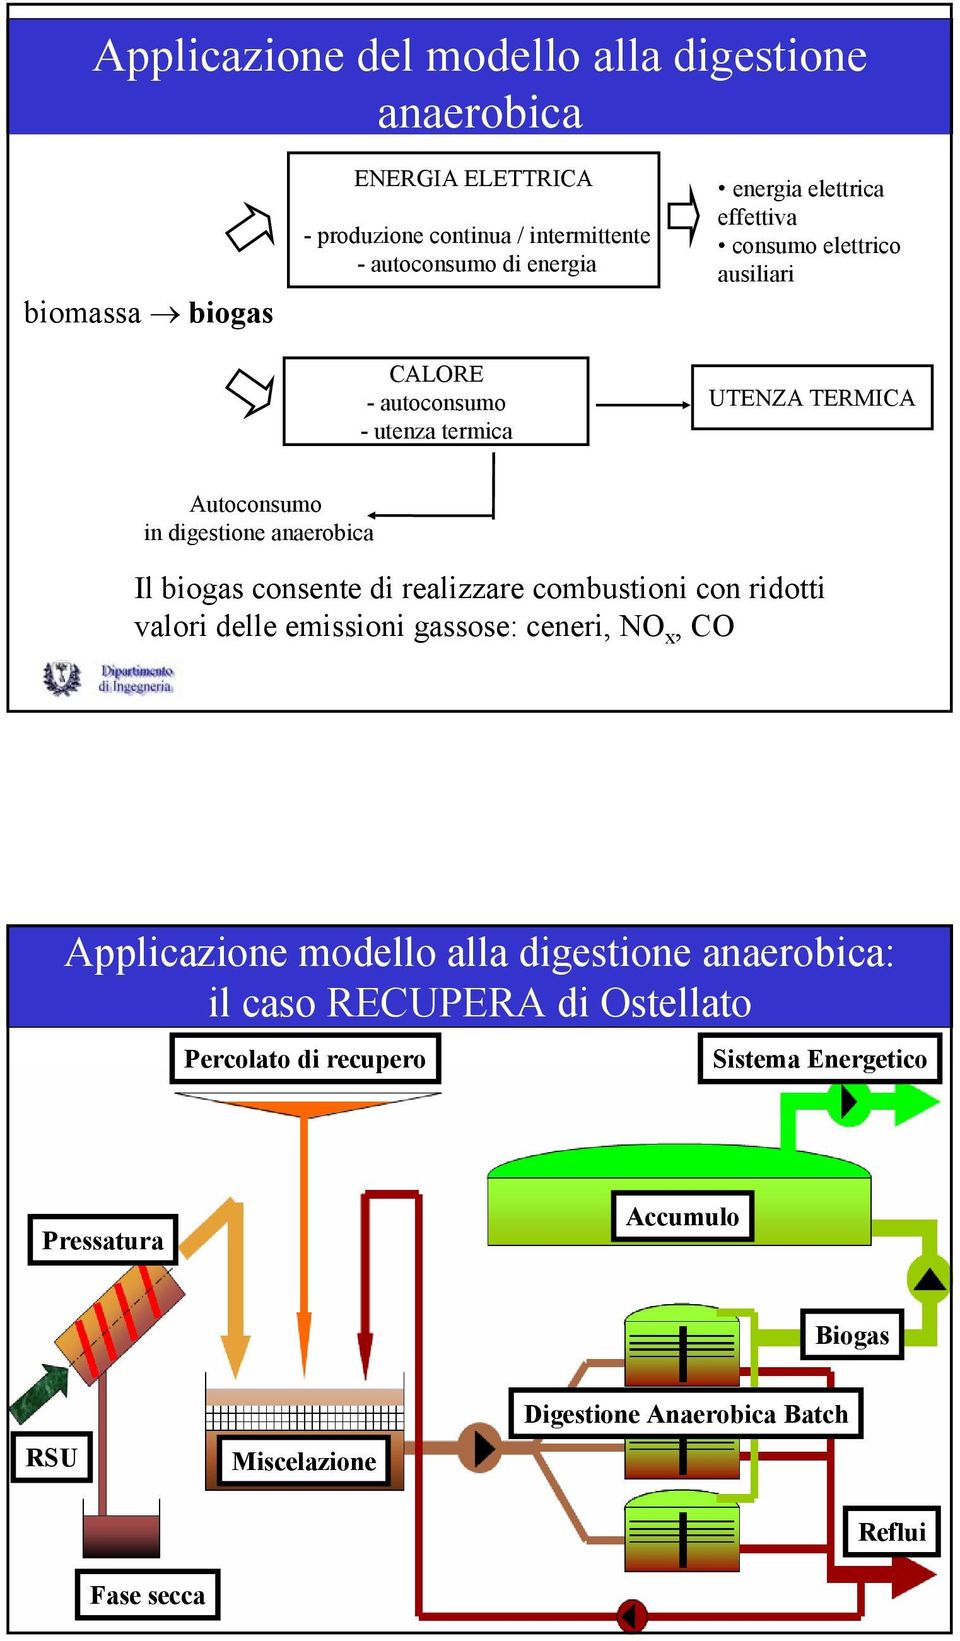 biogas consente di realizzare combustioni con ridotti valori delle emissioni gassose: ceneri, NO x, CO Applicazione modello alla digestione anaerobica: